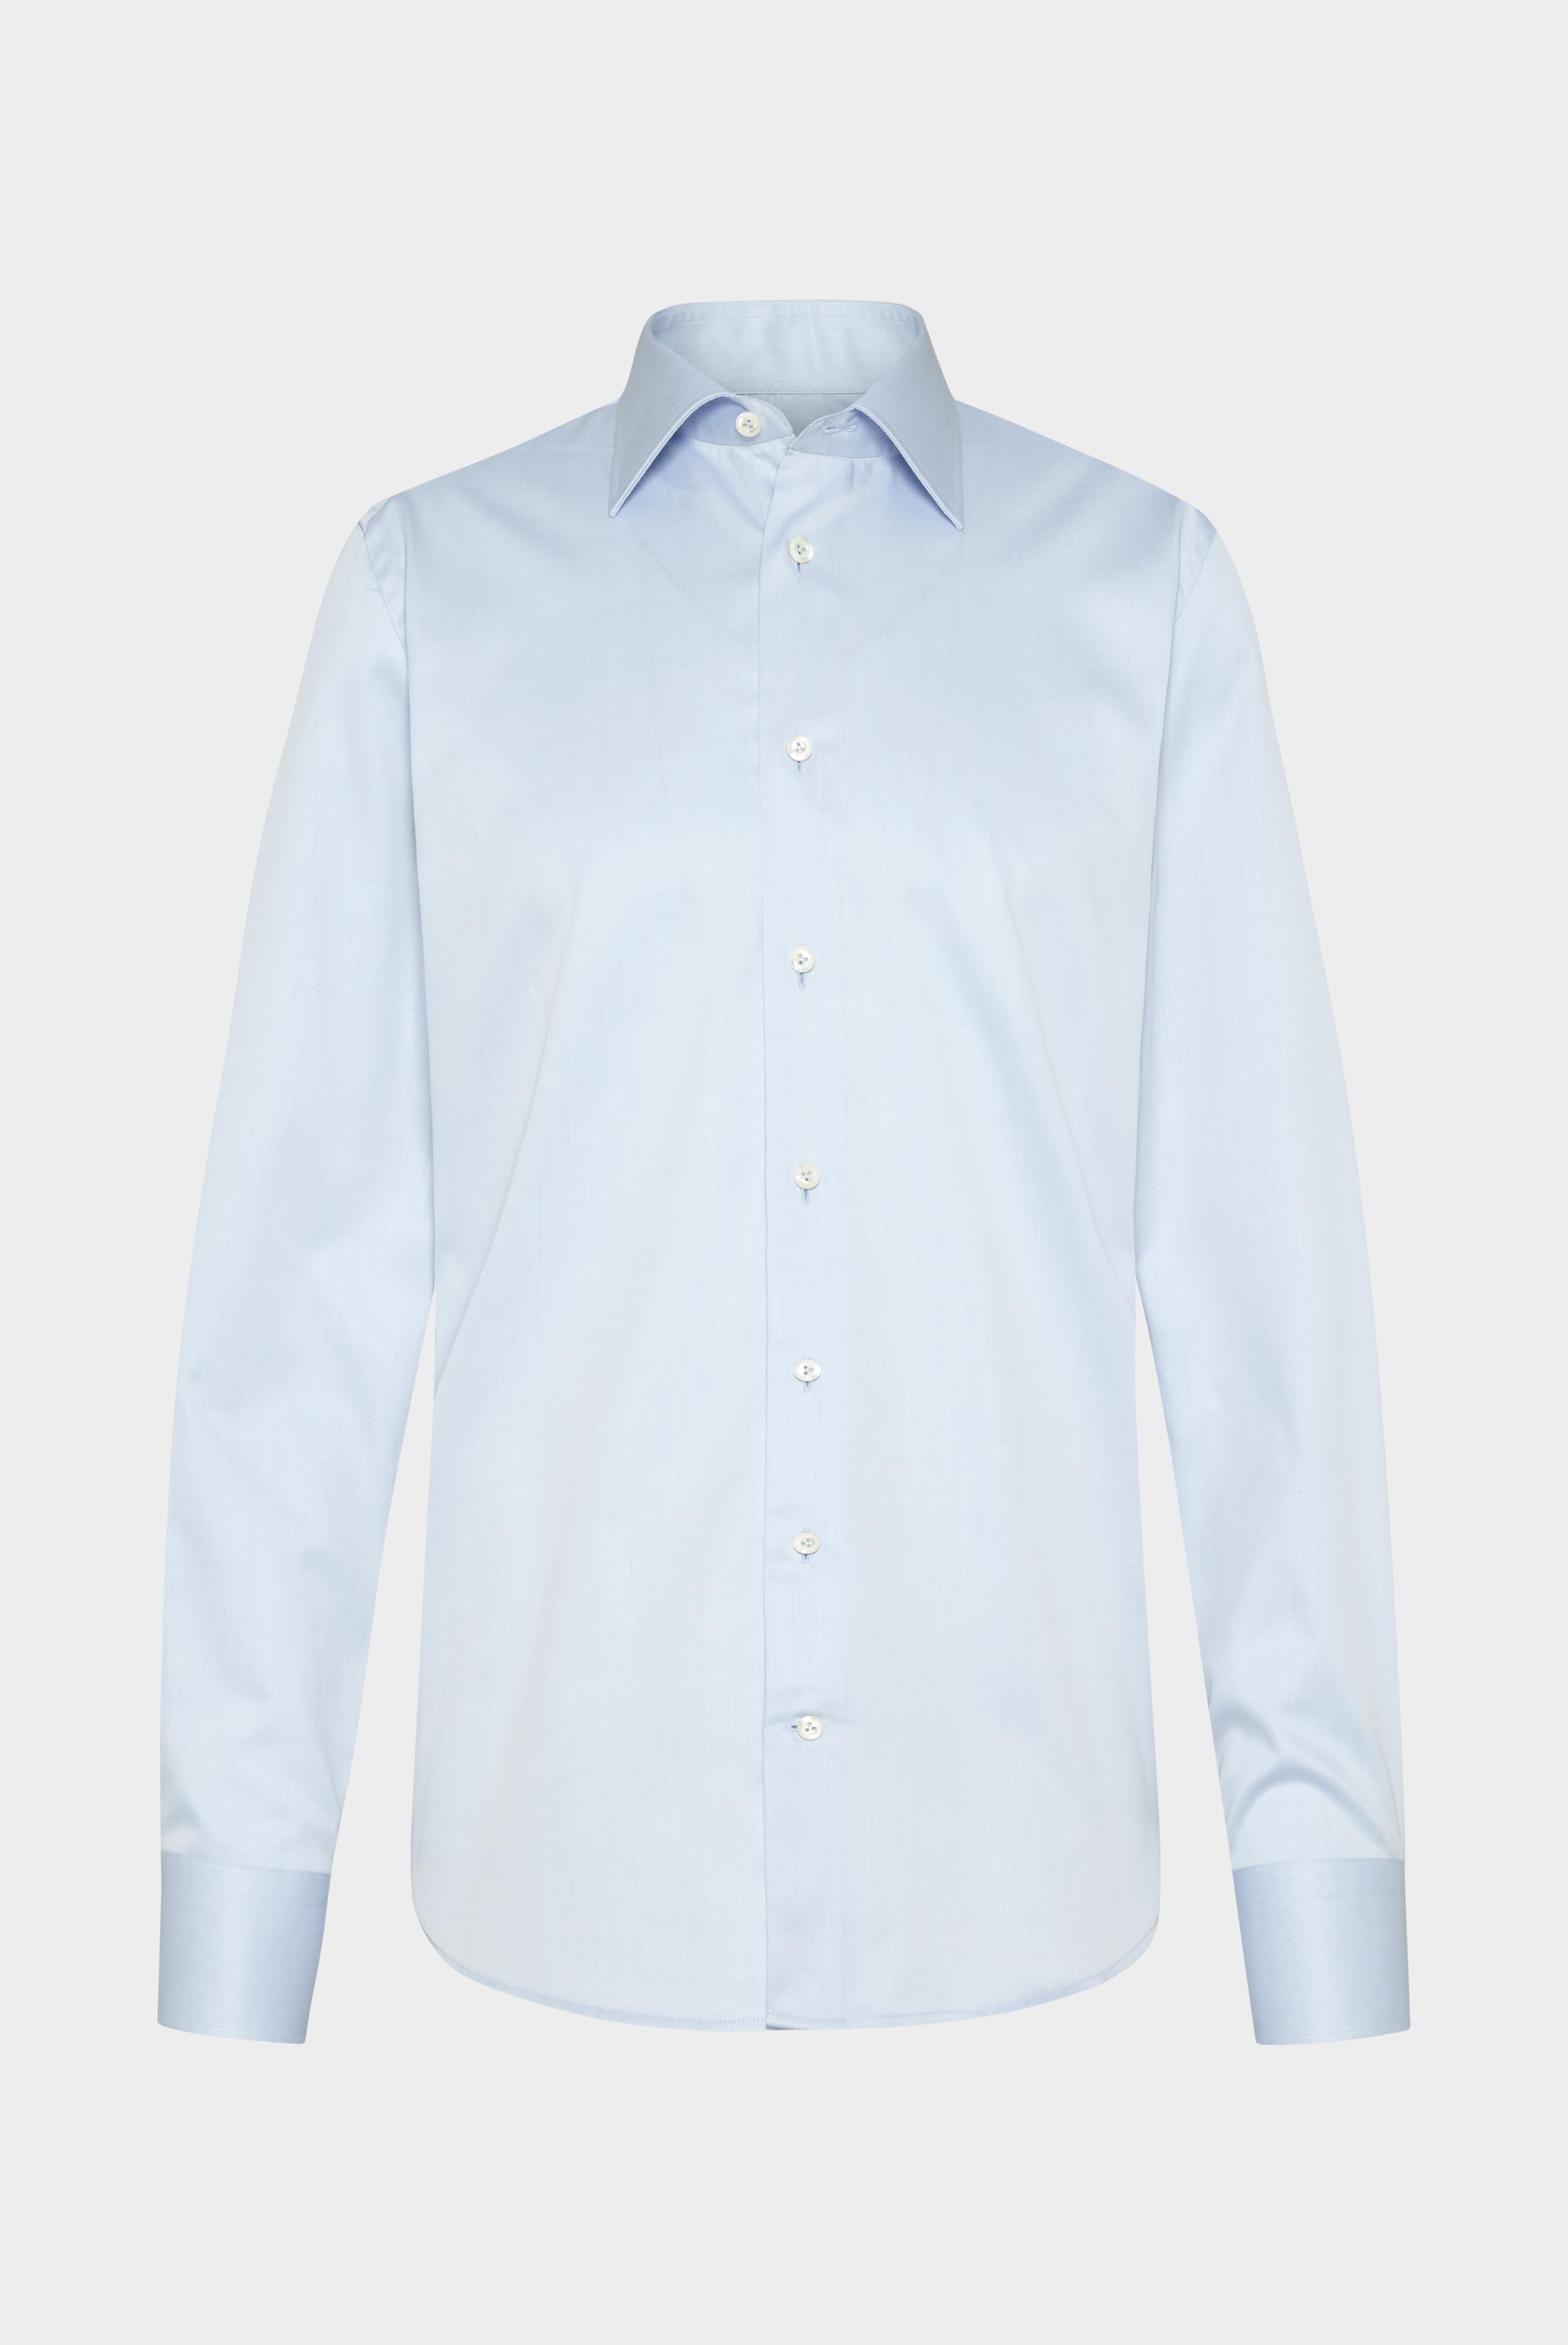 Bügelleichte Hemden+Bügelfreies Twill Hemd Comfort Fit+20.2046.BQ.132241.720.37